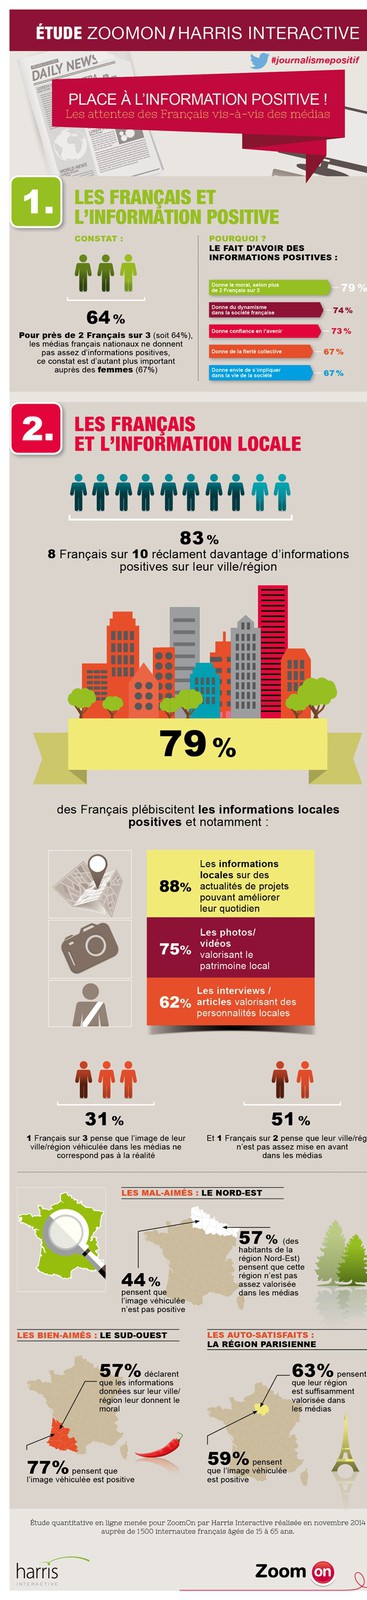 informations, Selon un sondage, les Français veulent plus d&rsquo;informations positives. Et vous ?, Made in Marseille